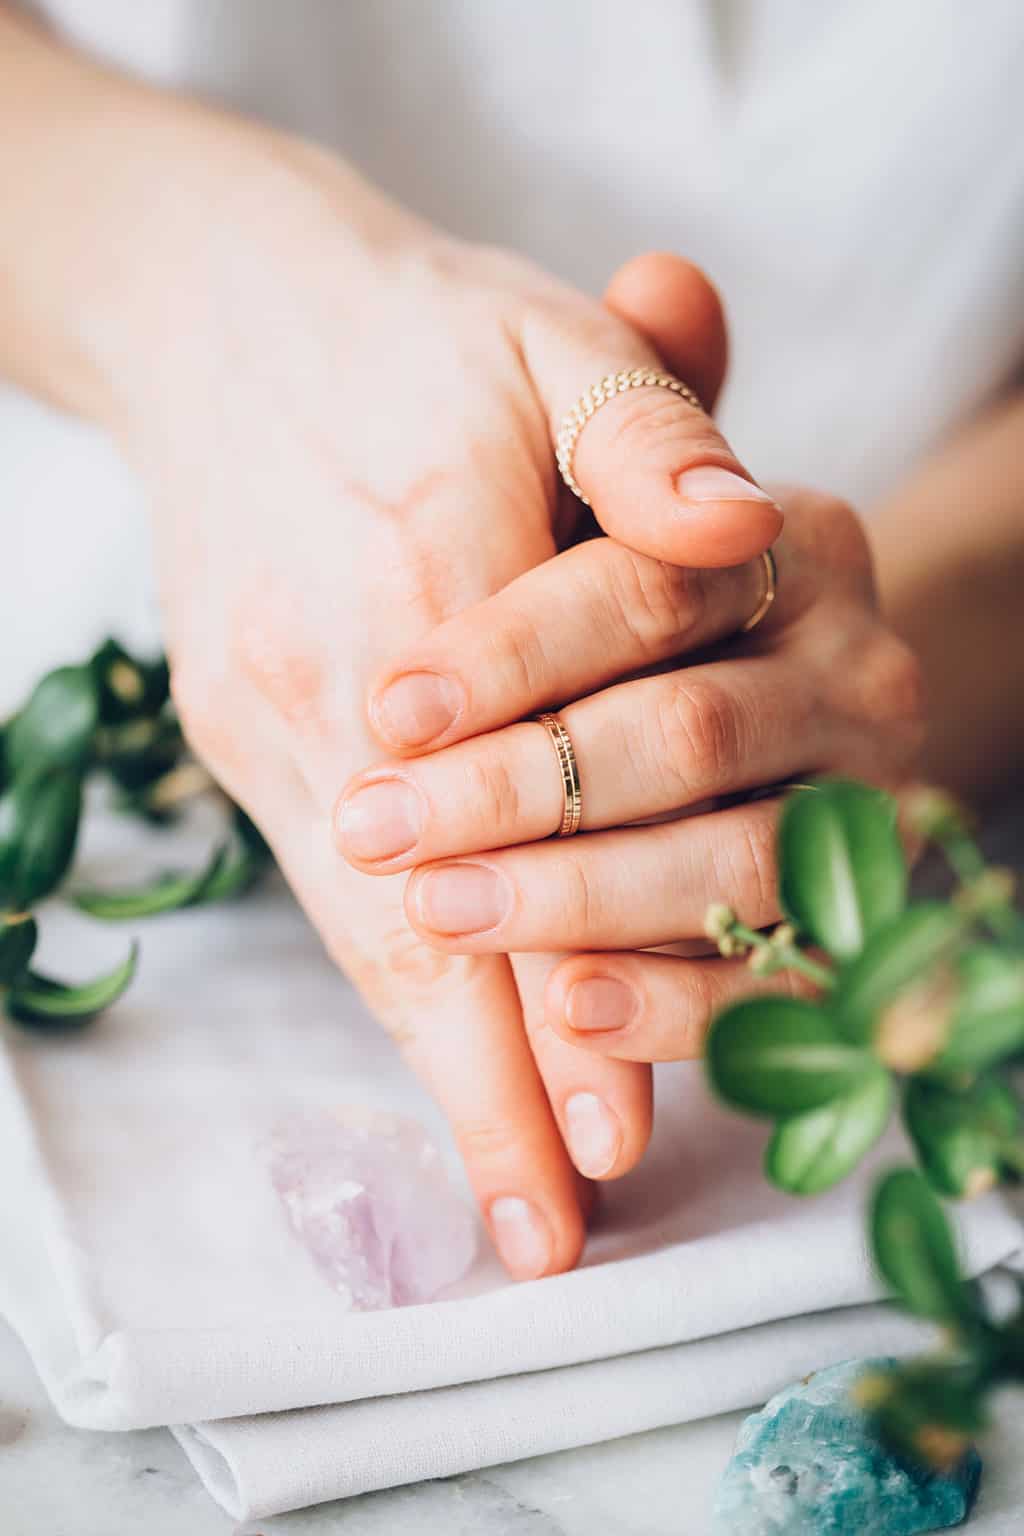 Nail Experts Share 10 Secrets To Healthy, Natural
Nails